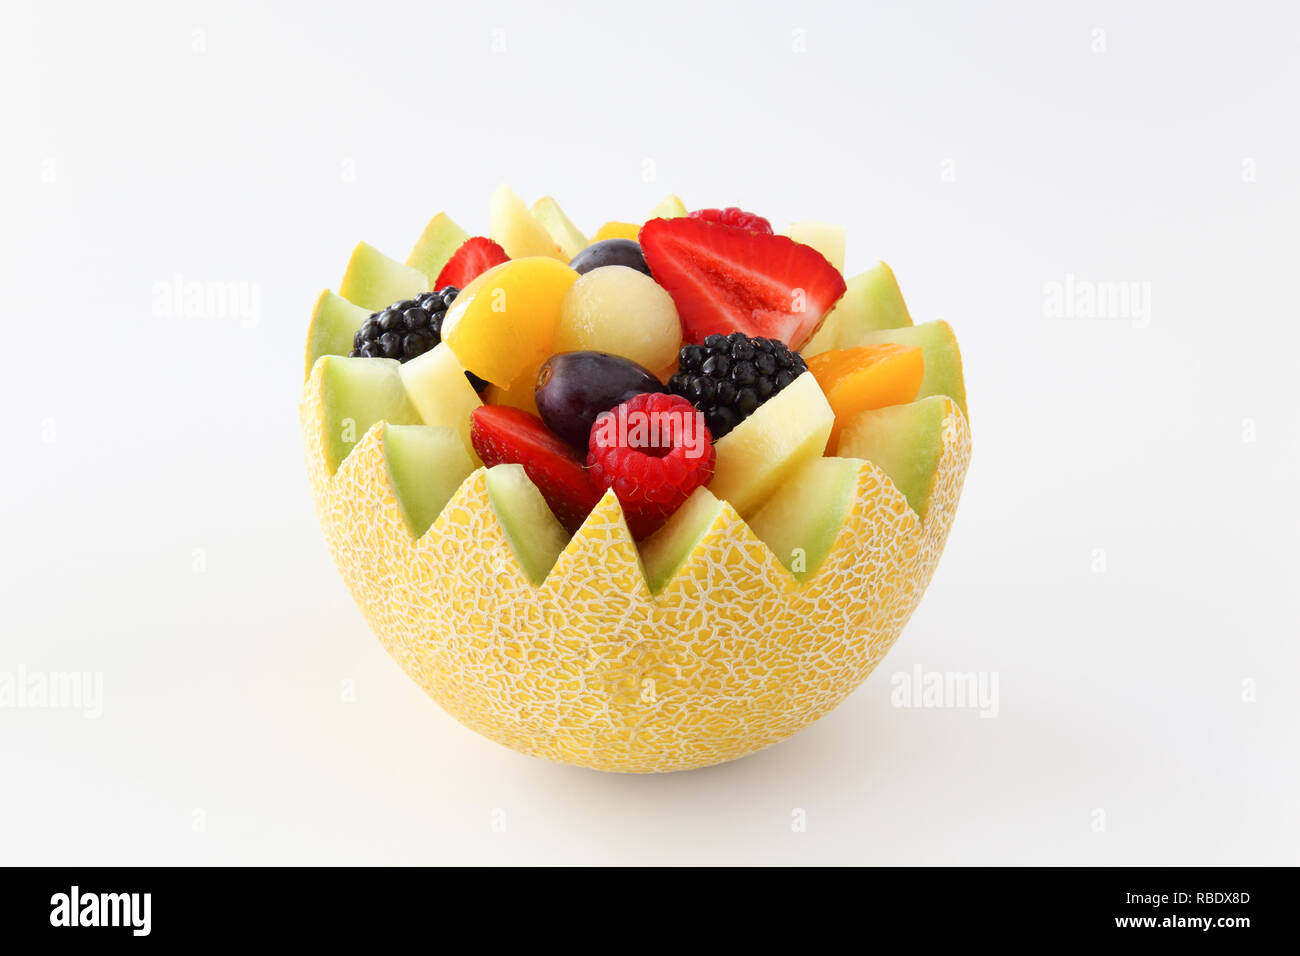 Fancy cut Melone auf einem weißen Hintergrund mit sortierten Obst wie Erdbeeren, Himbeeren, Weintrauben, Pfirsiche, Ananas, in Scheiben geschnitten und Brombeeren Stockfoto